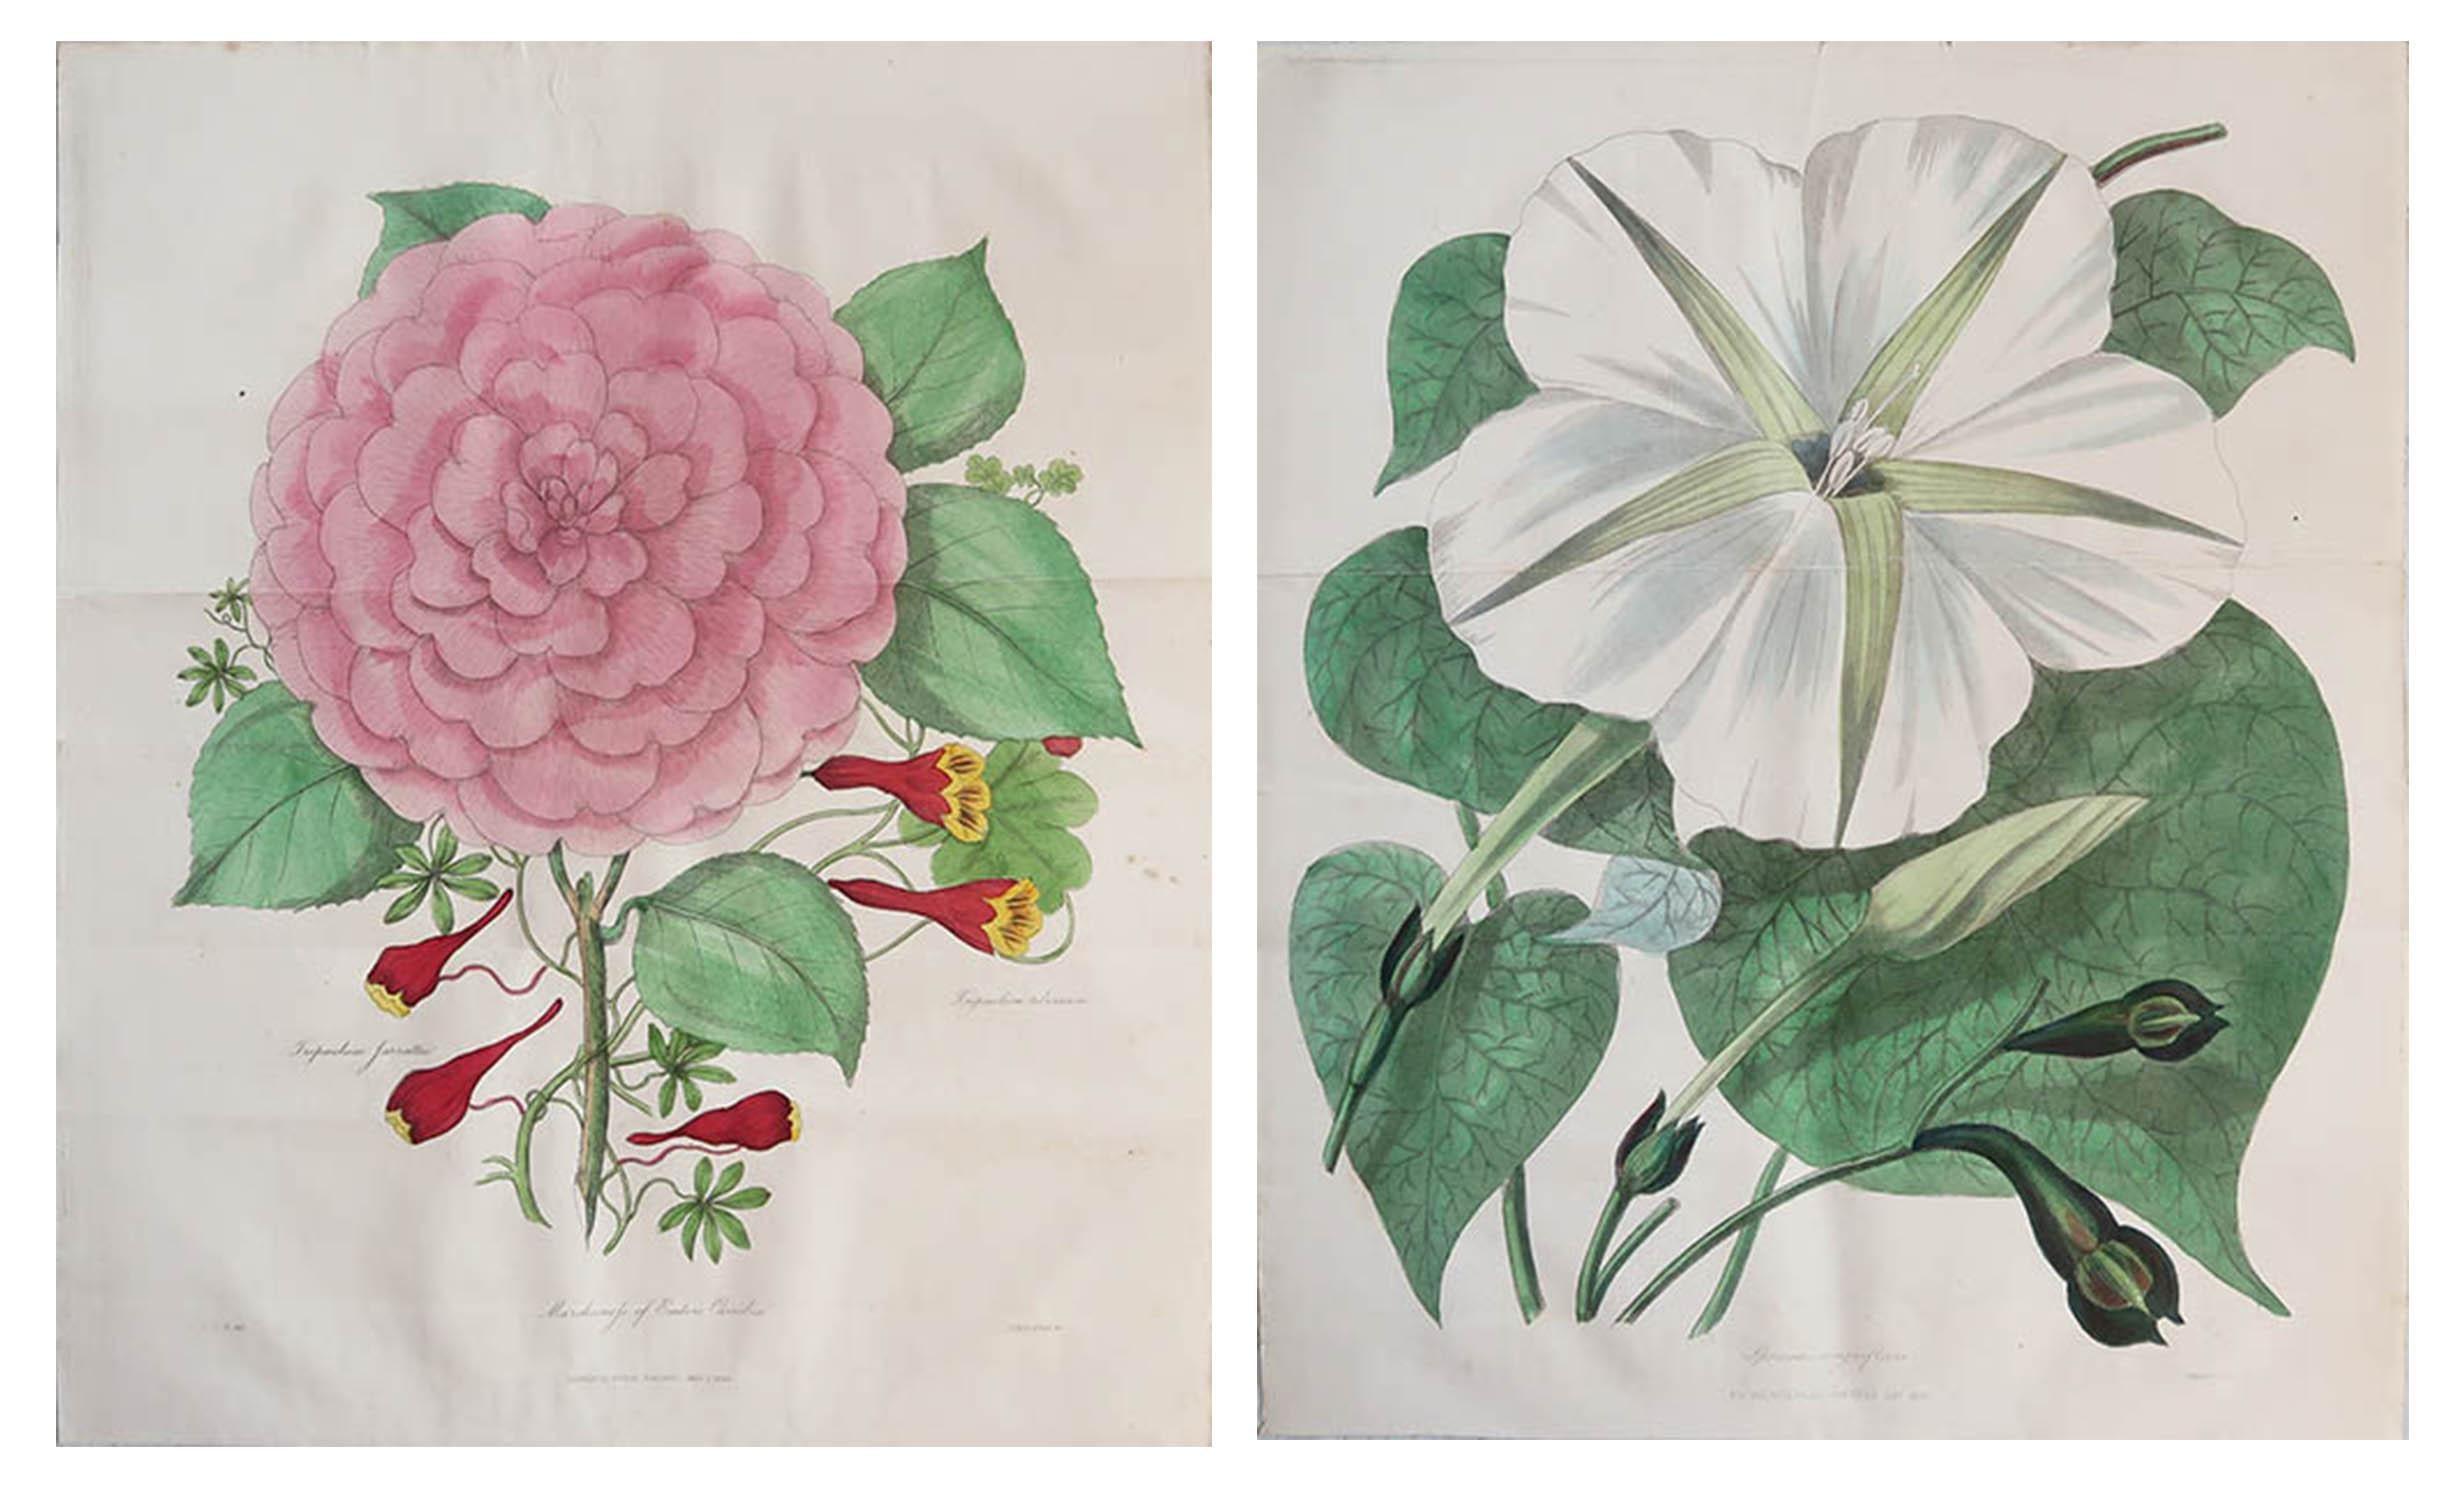 Merveilleuse paire d'imprimés botaniques.

Lithographies d'Alfred Adlard

Après C.I.C. Harrison

Couleur originale à la main

Publié, 1838

Non encadré.

La mesure donnée est pour une impression.

